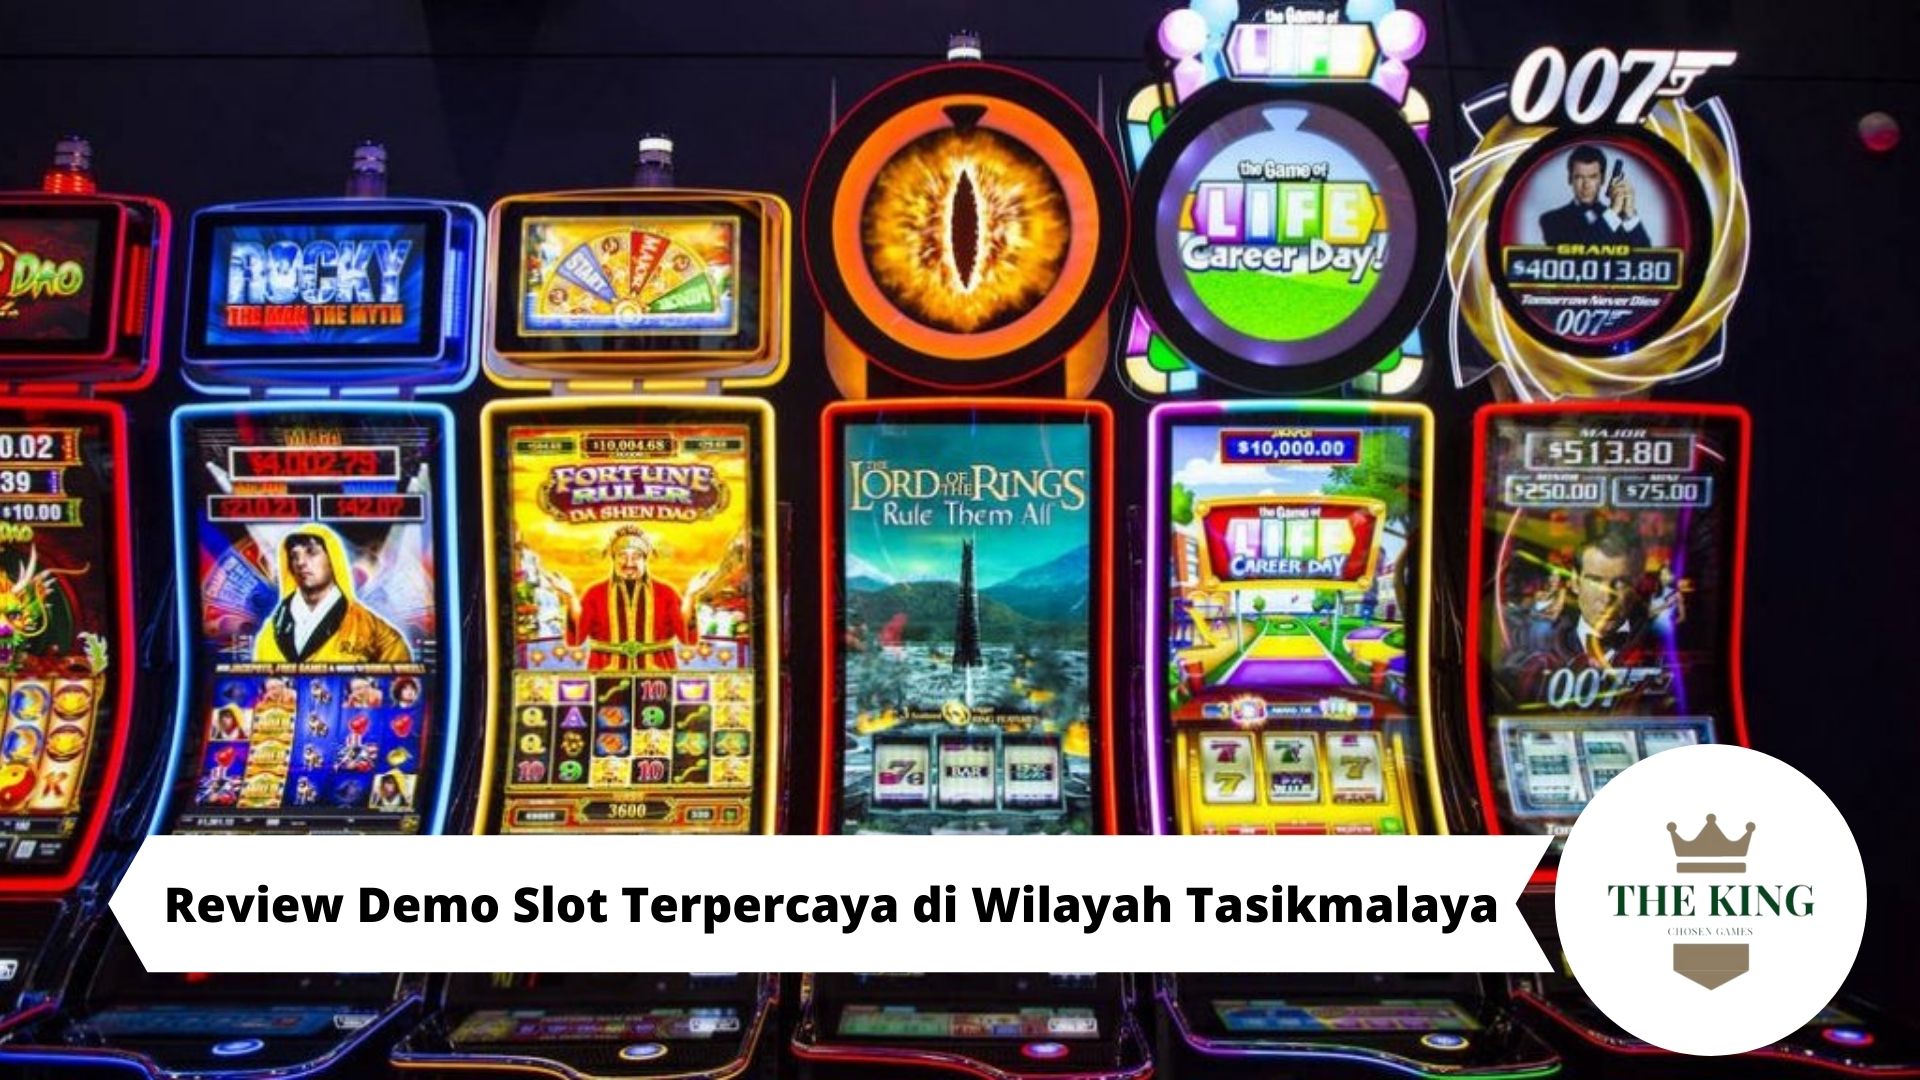 Review Demo Slot Terpercaya di Wilayah Tasikmalaya